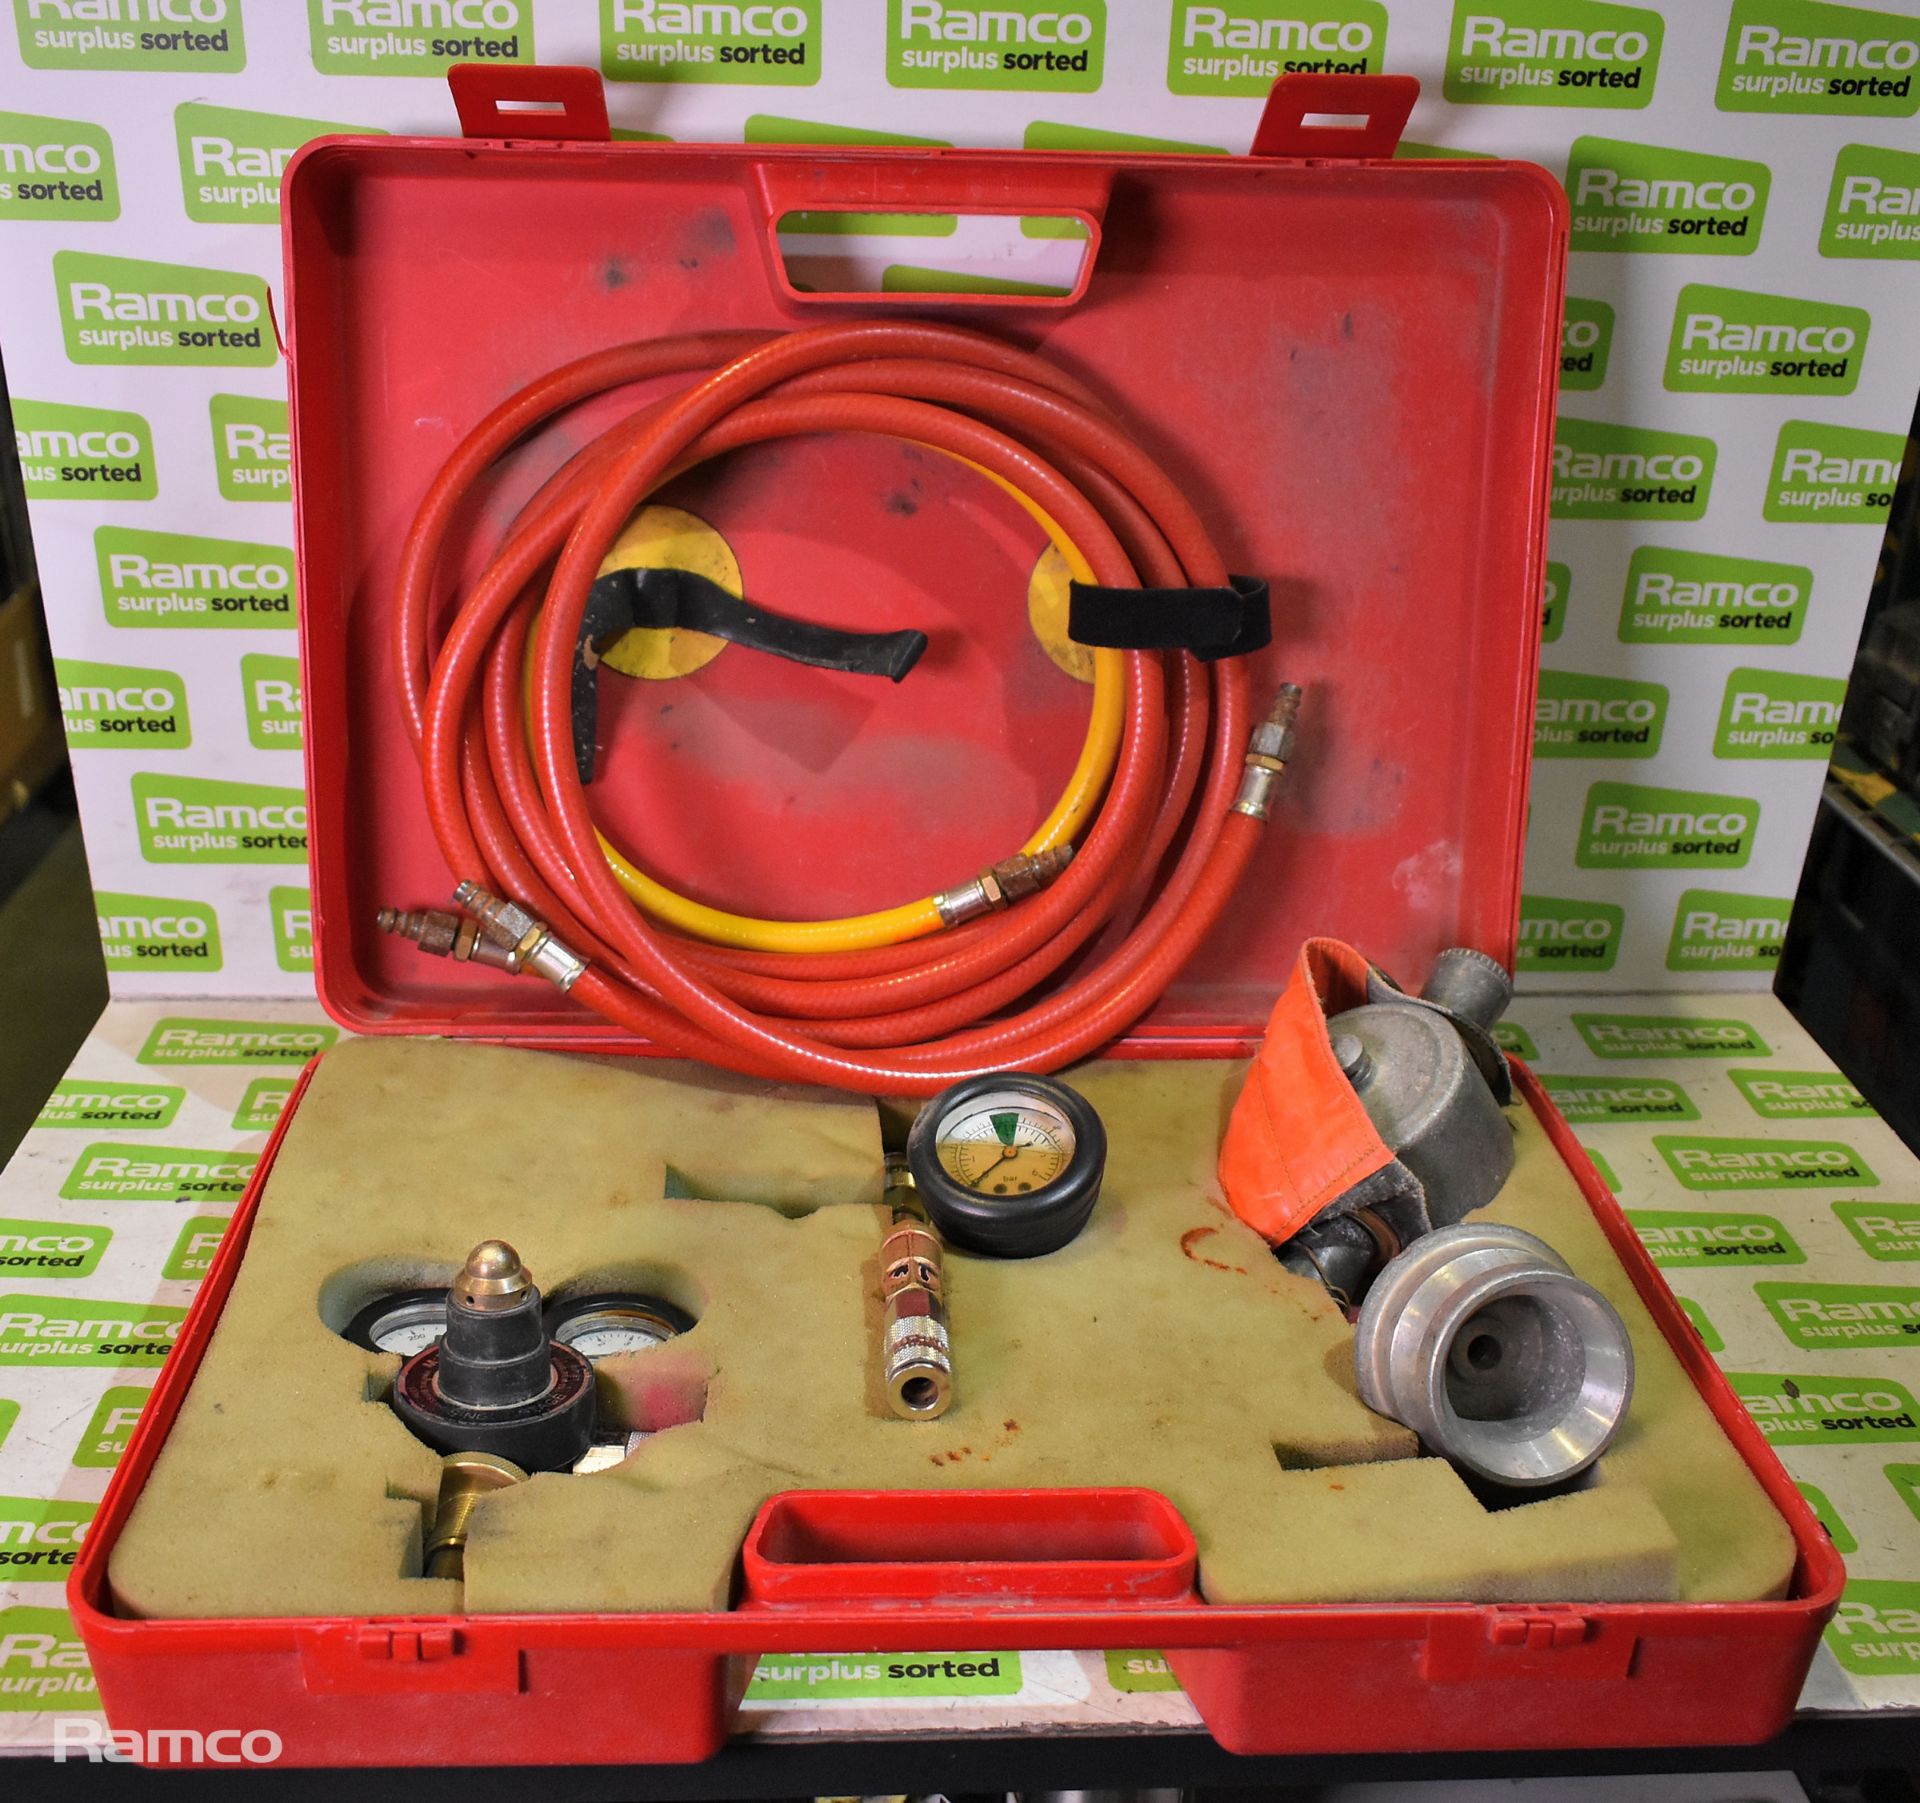 MFC Survival Ltd fire hose inflation kit